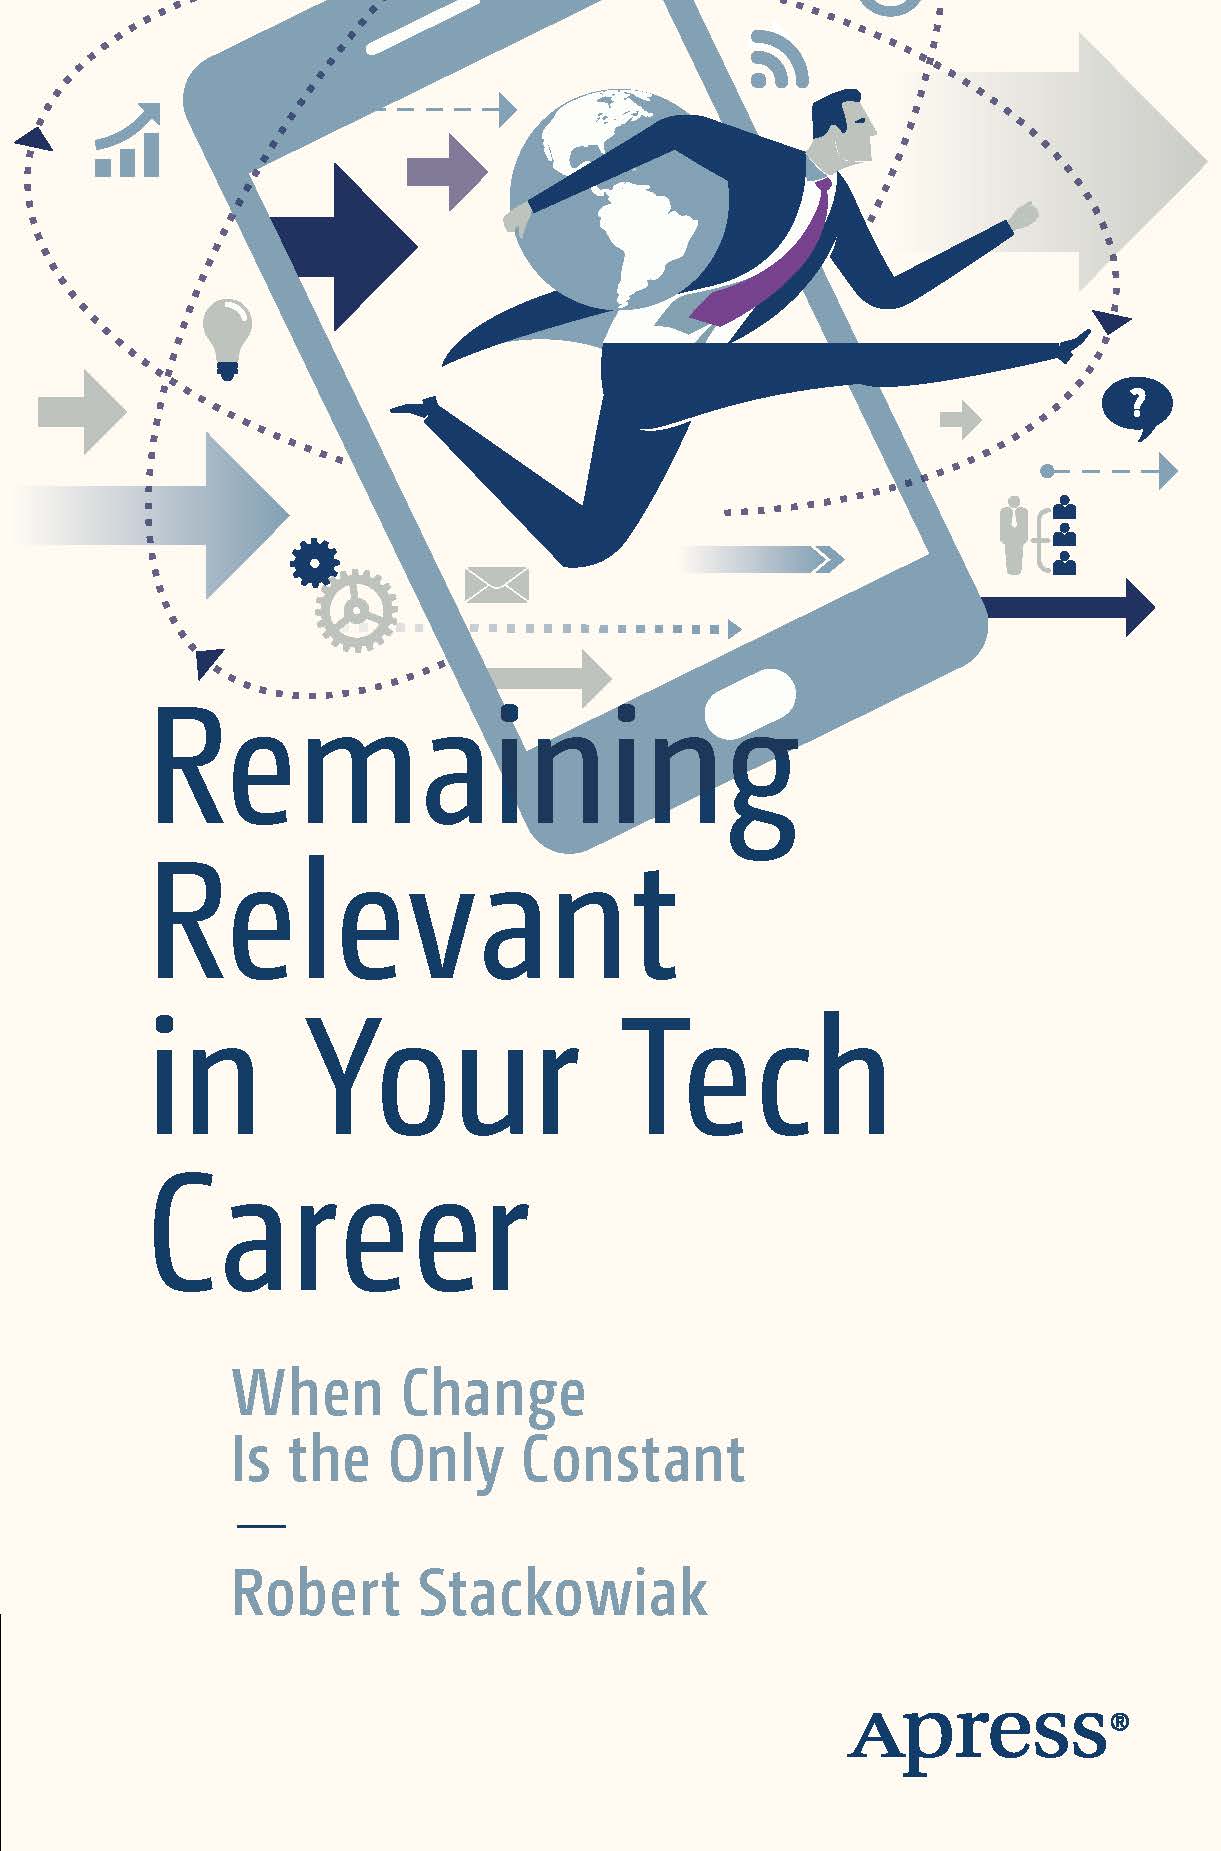 页面提取自－2019_Book_Remaining Relevant in Your Tech Career.jpg